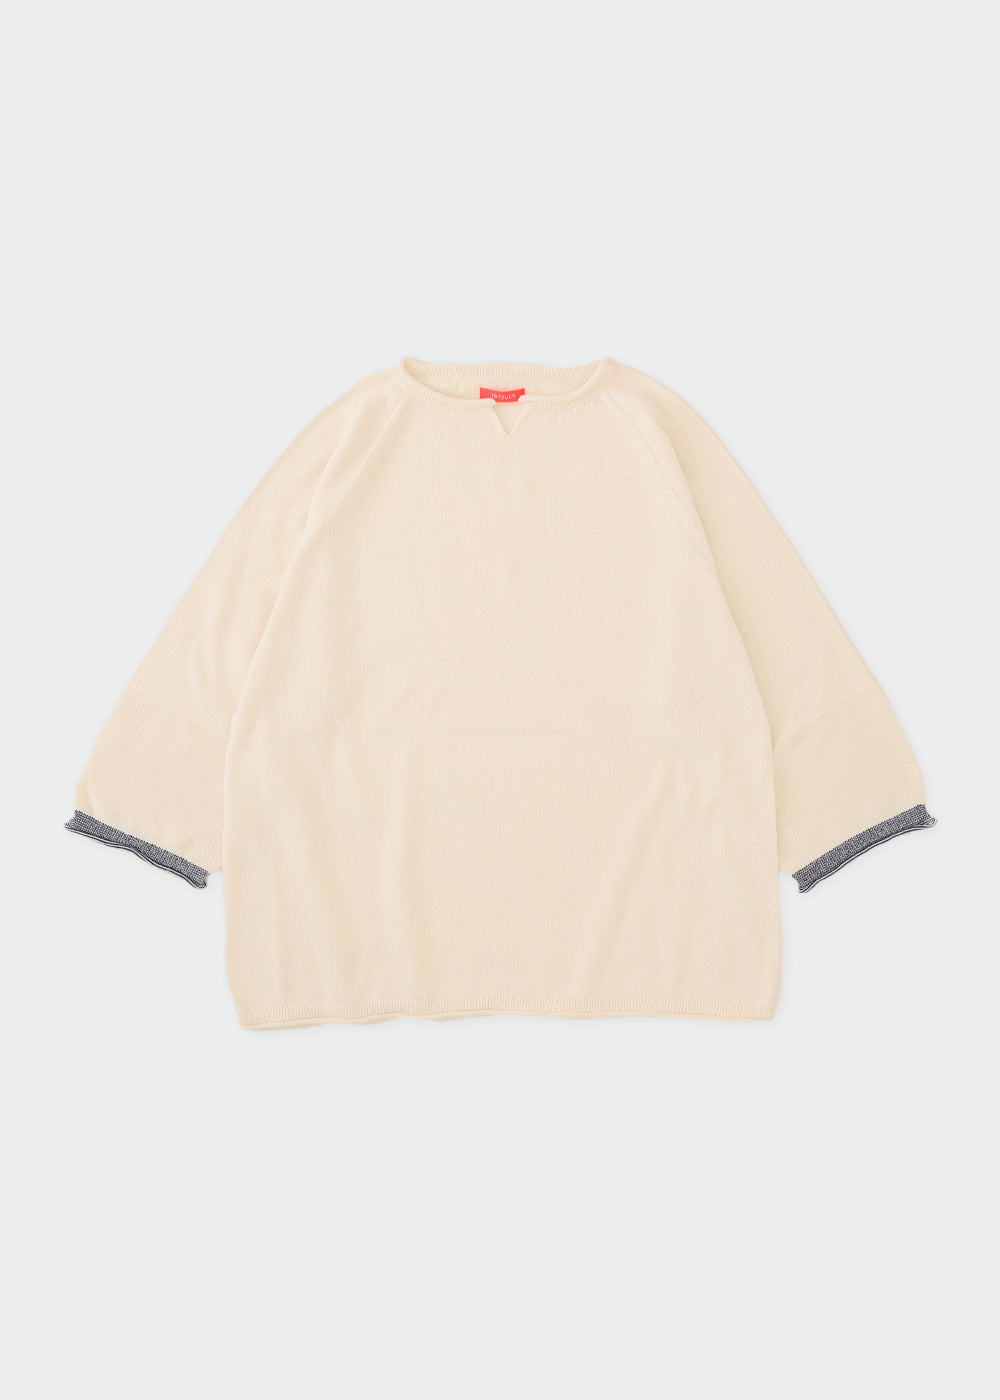 超格安価格 トクコの七分袖と長袖のアンサンブル Tシャツ/カットソー 